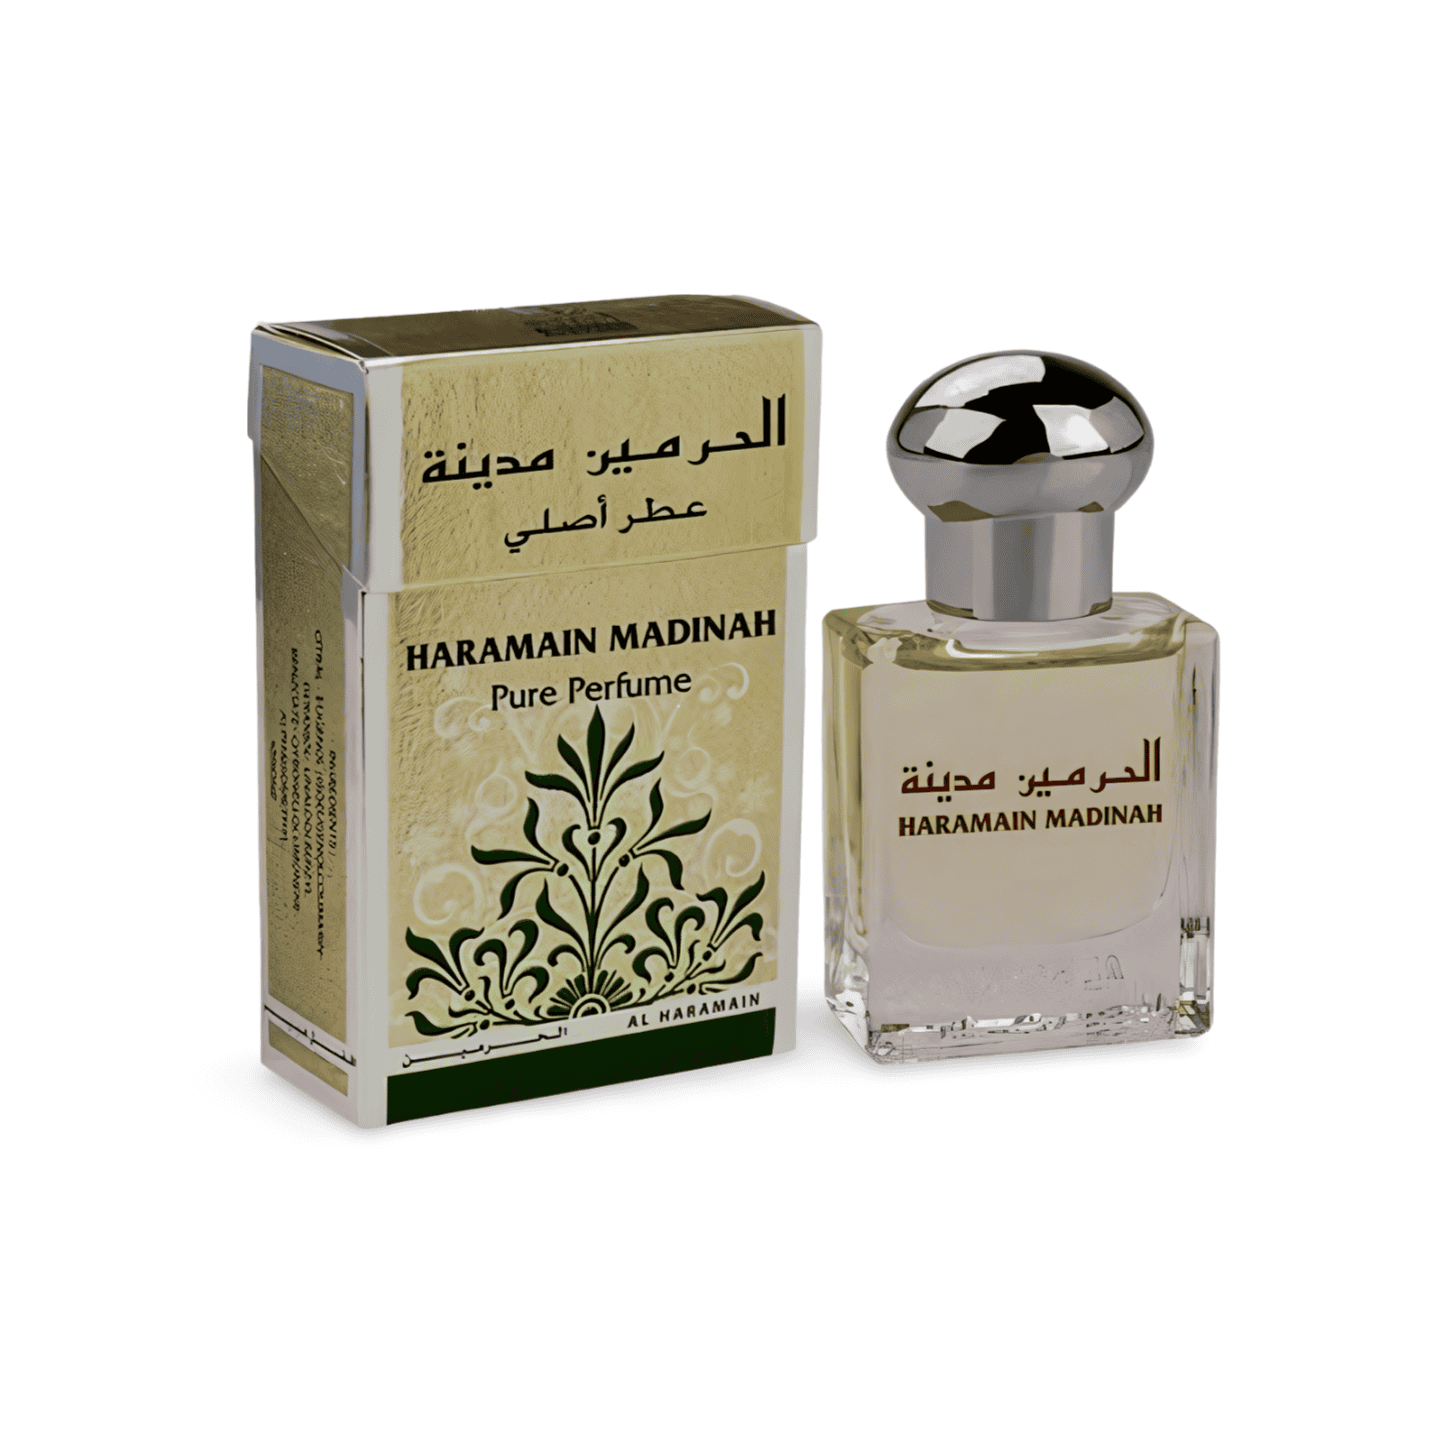 Al Haramain Madinah Arabic Perfume